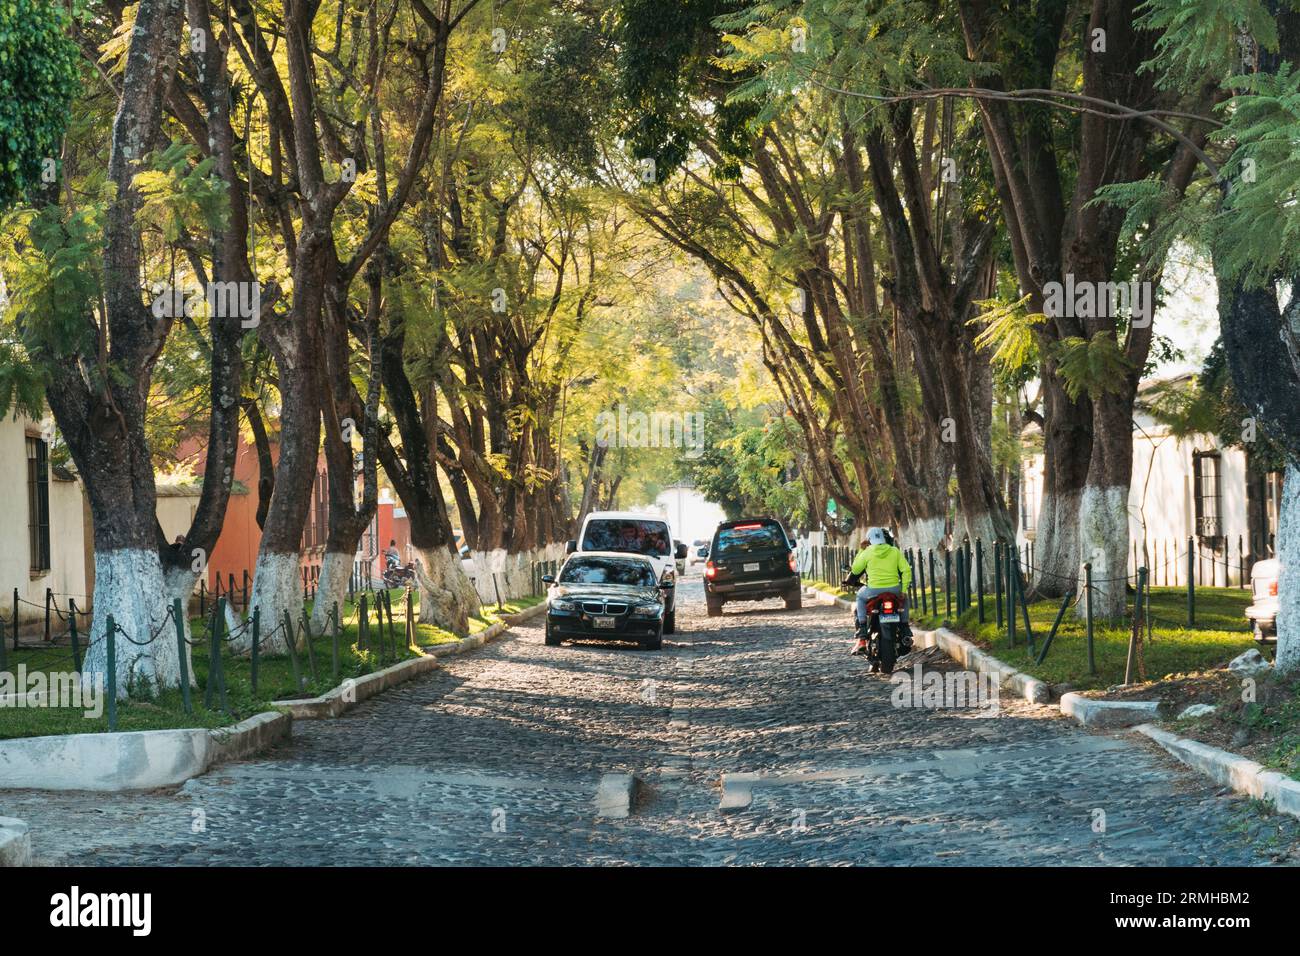 Une rue pavée bordée d'arbres par un après-midi ensoleillé dans la ville historique d'Antigua Guatemala Banque D'Images